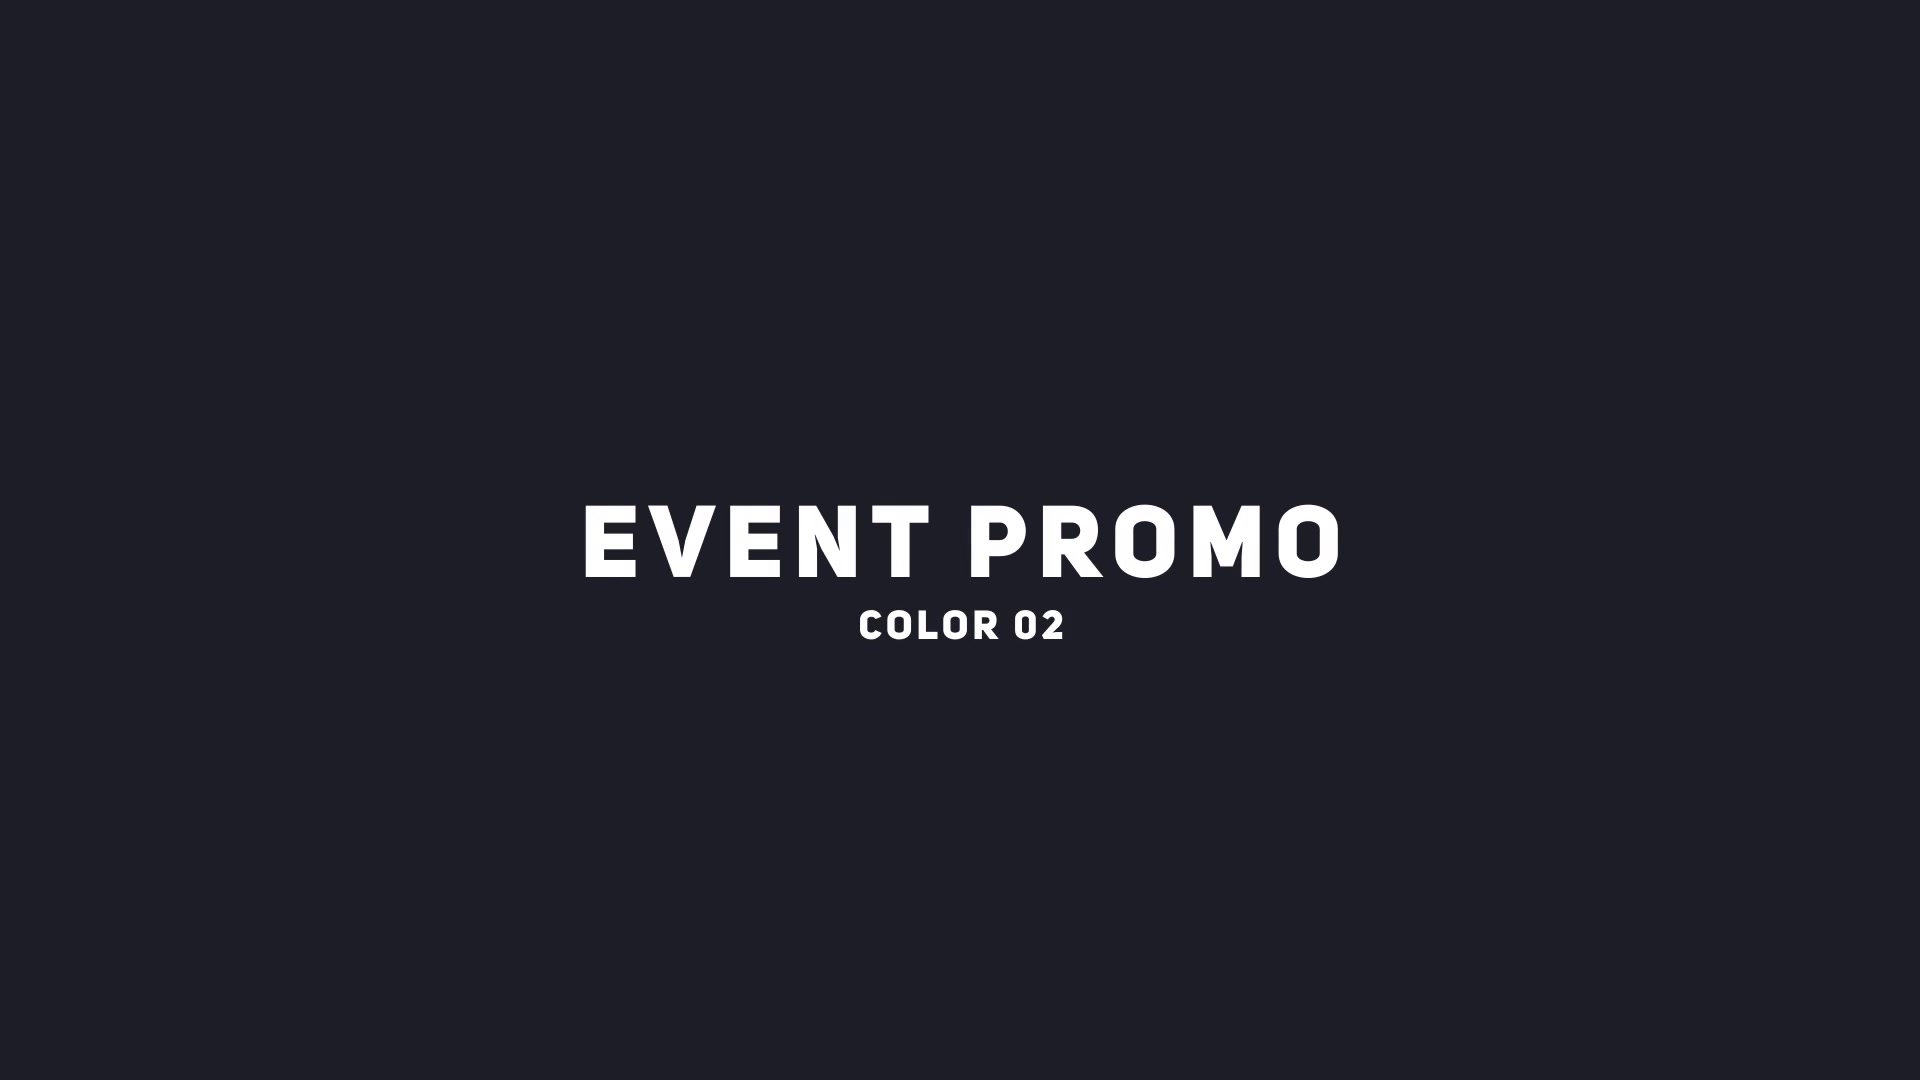 Event Promo Videohive 39415612 Premiere Pro Image 6